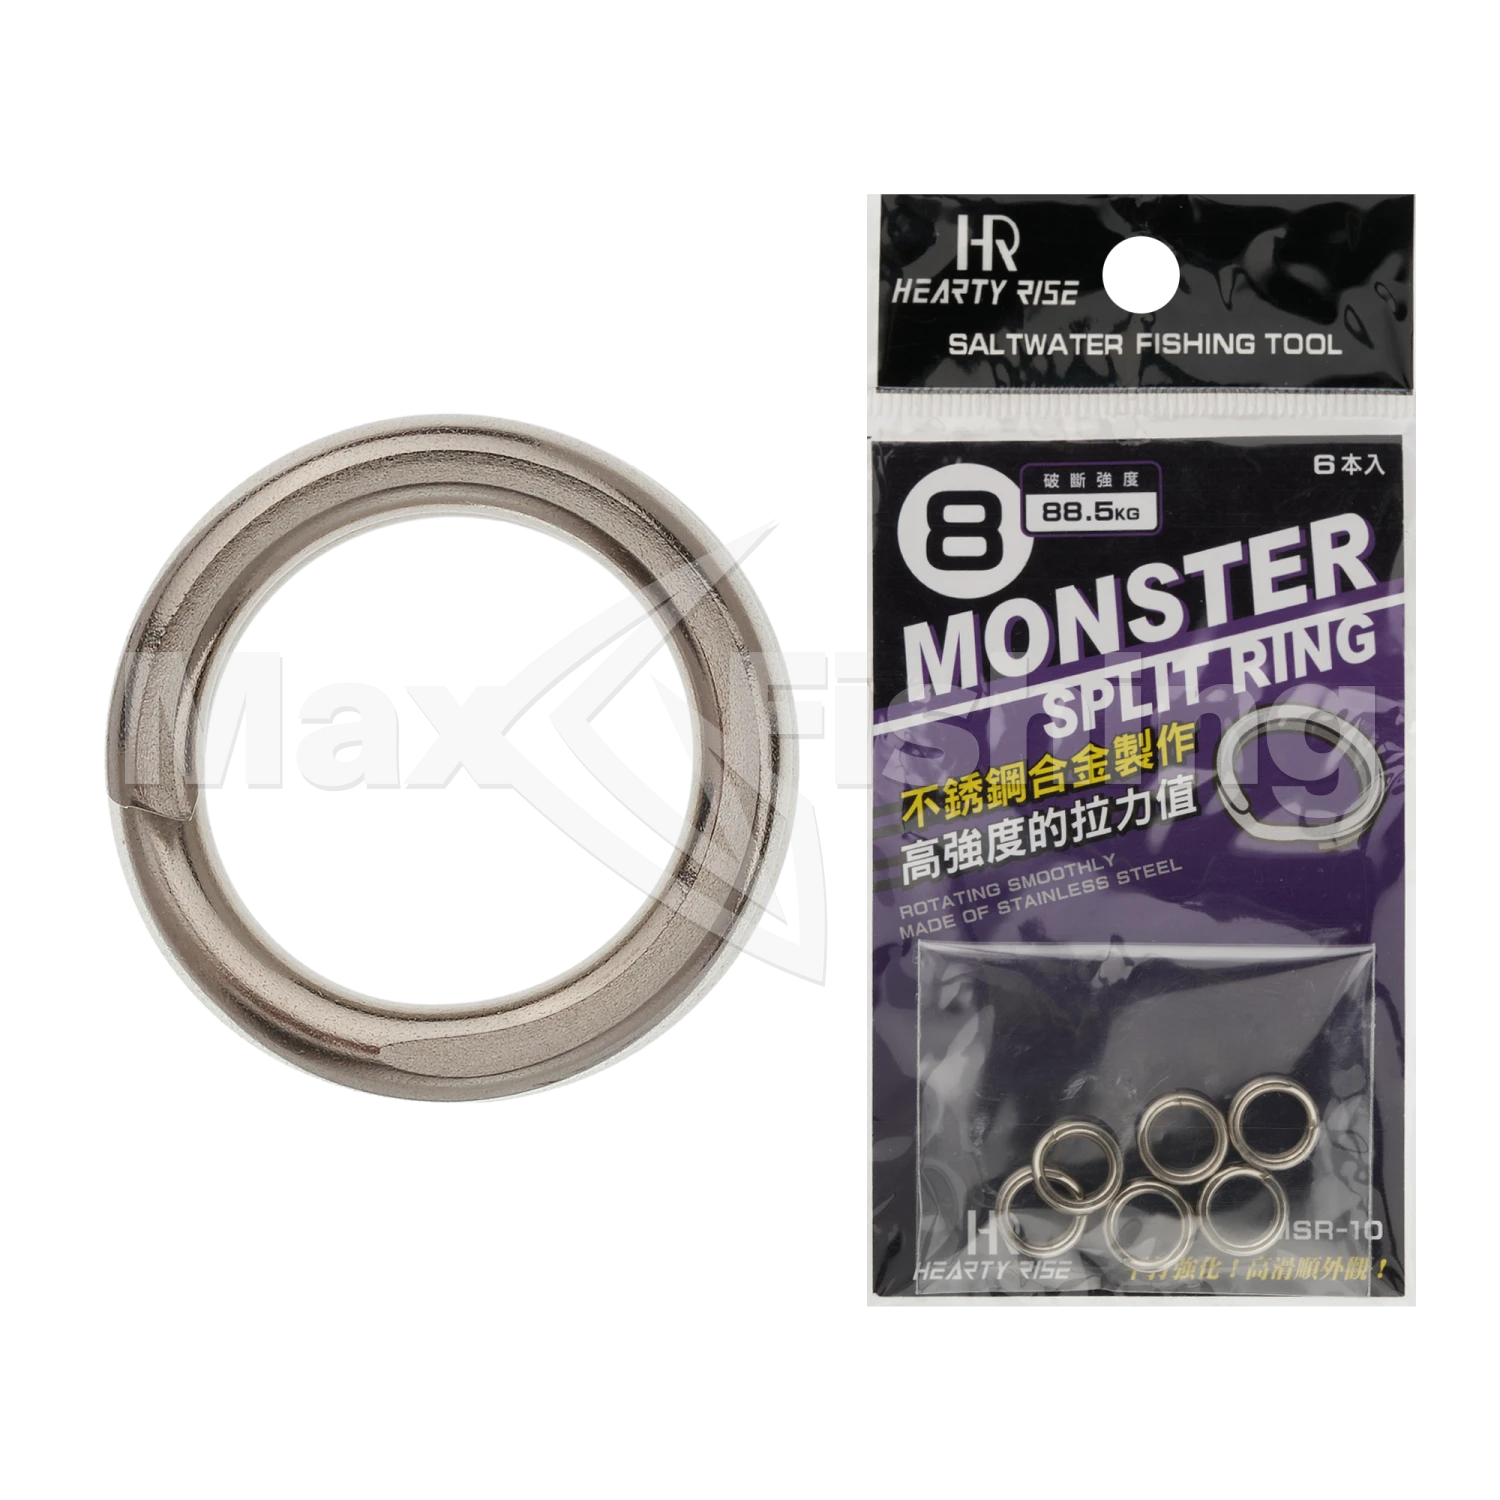 Кольцо заводное Hearty Rise Monster Game Split Ring MSR-10 #8